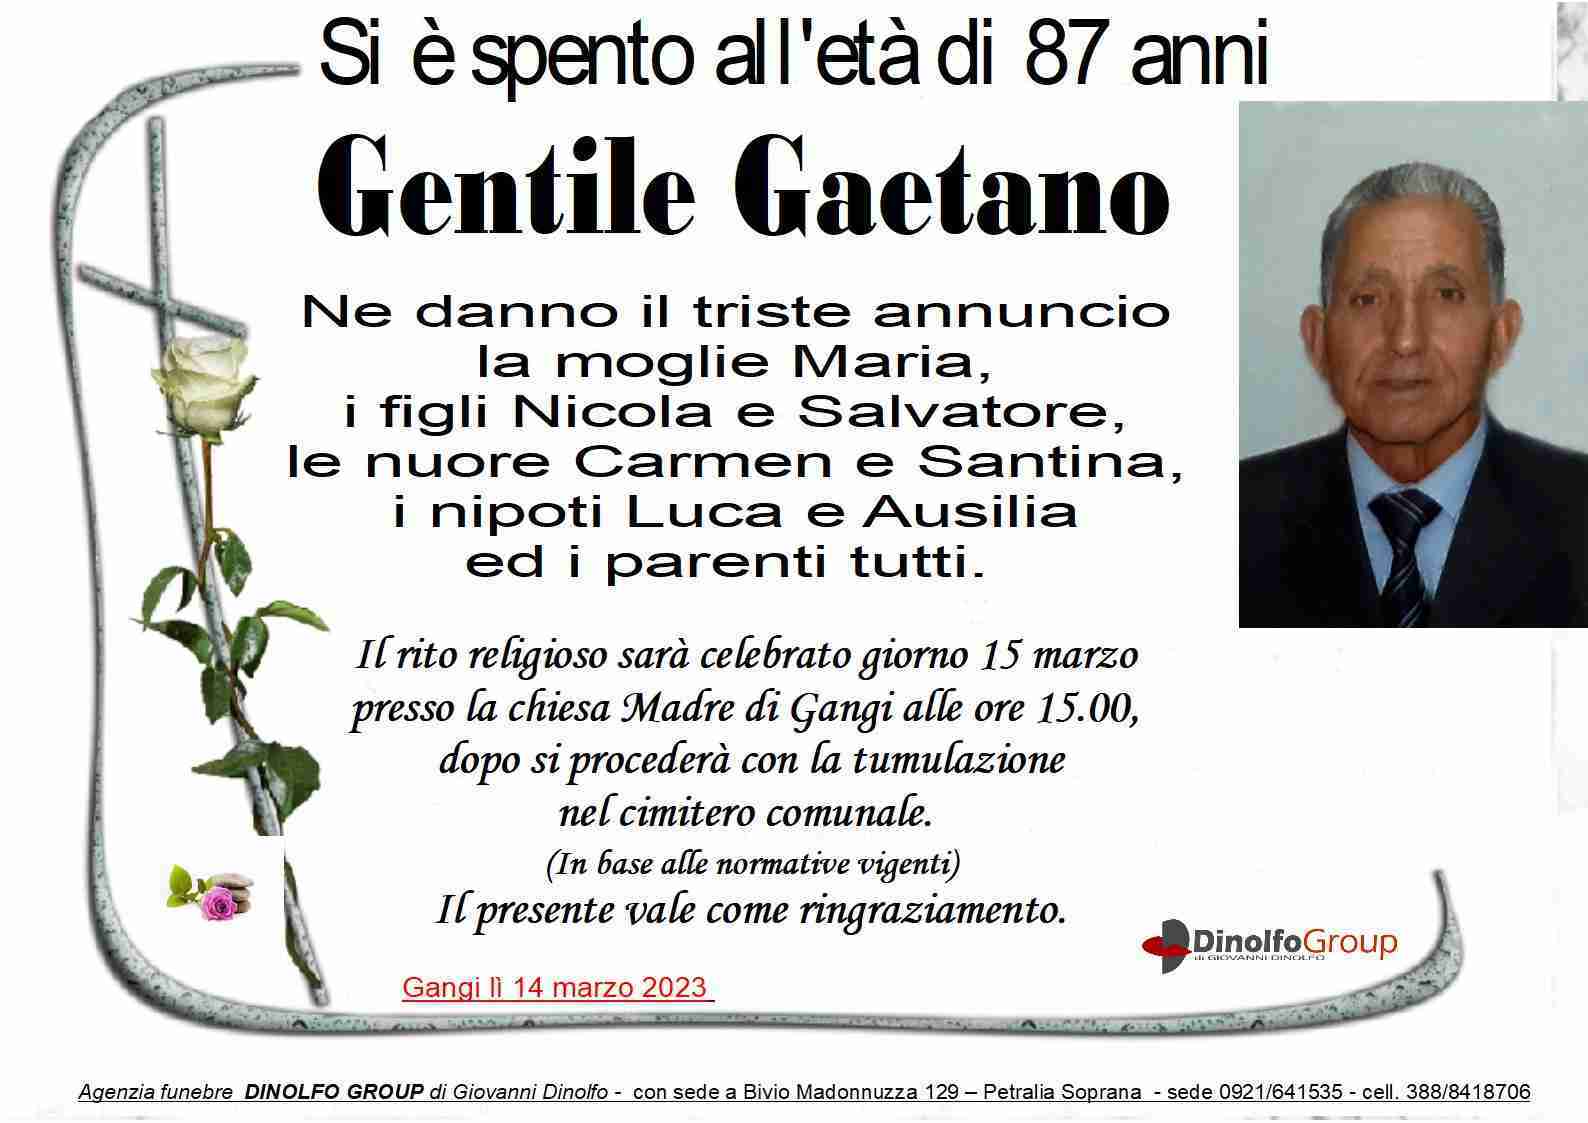 Gaetano Gentile